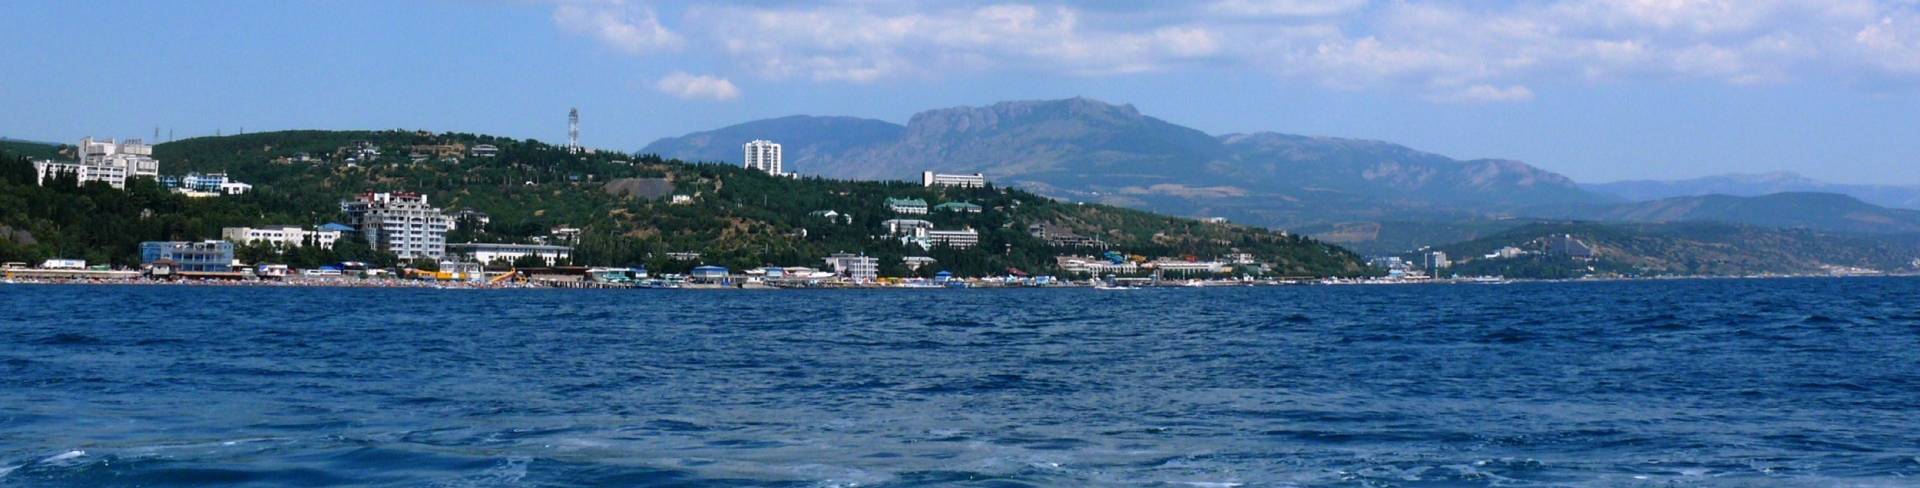 Алушта - город в Крыму